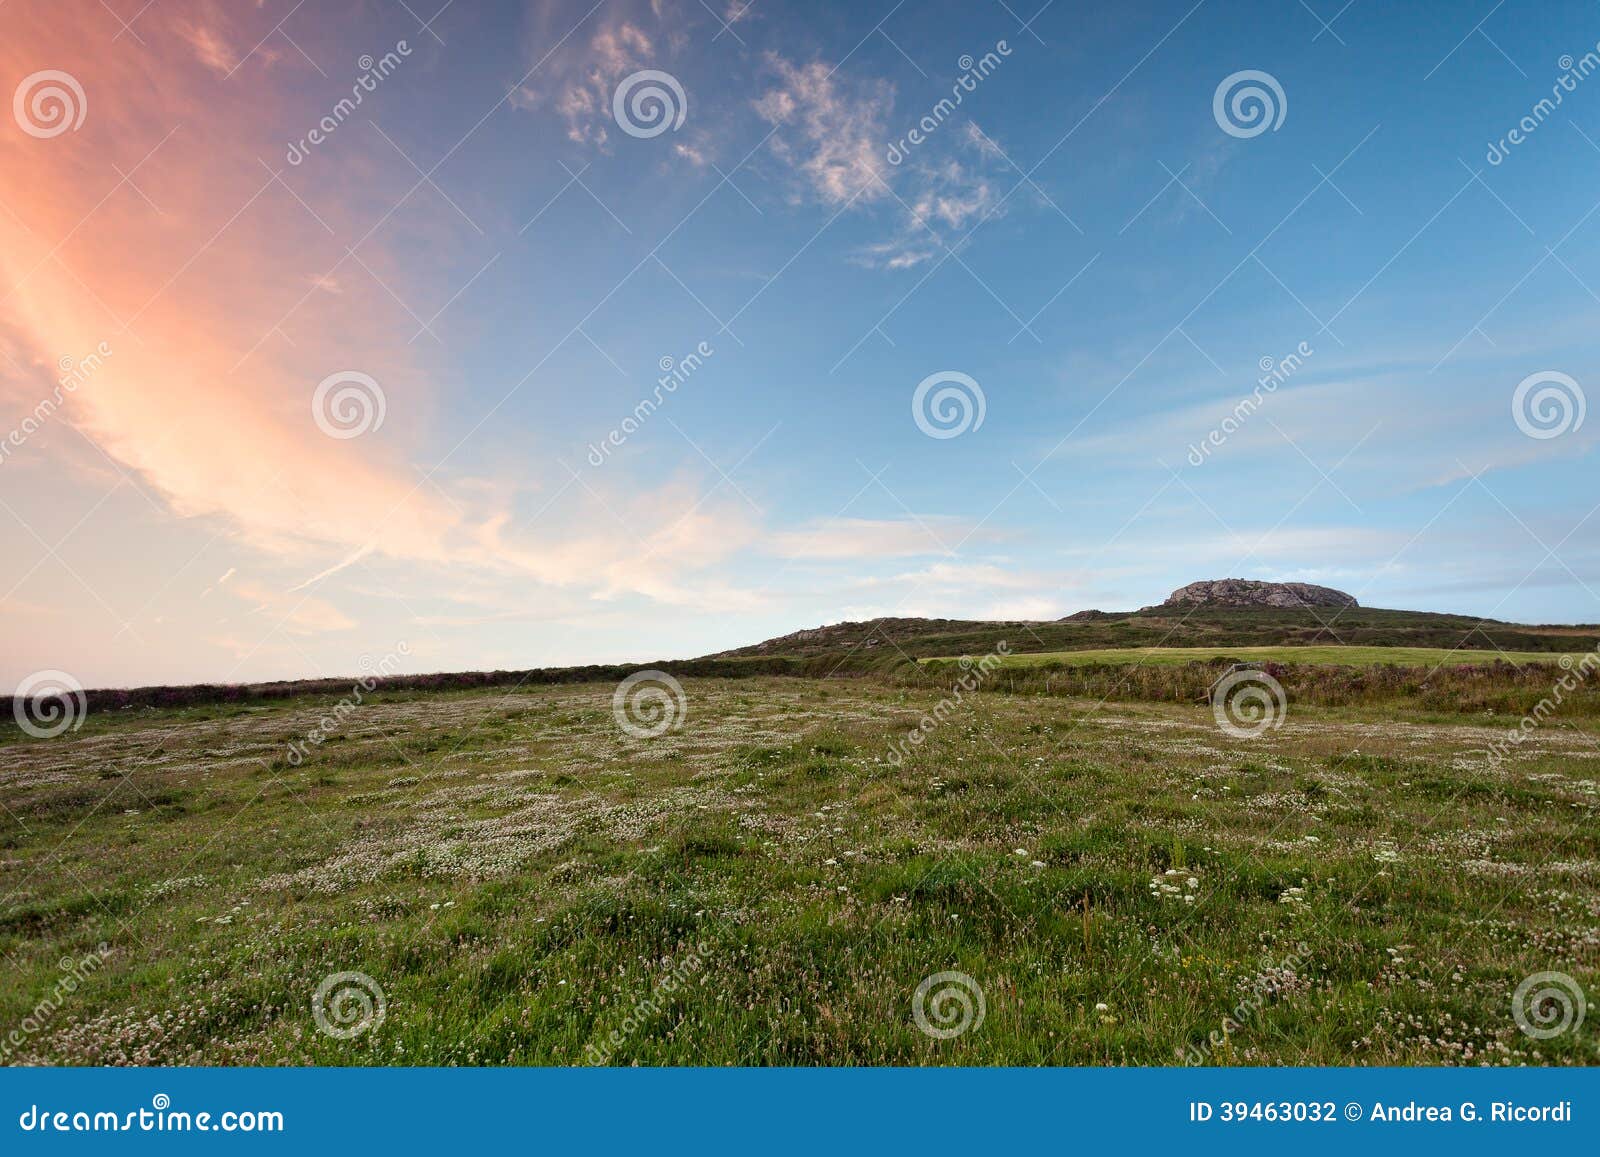 carn llidi, pembrokeshire green hill at sunset